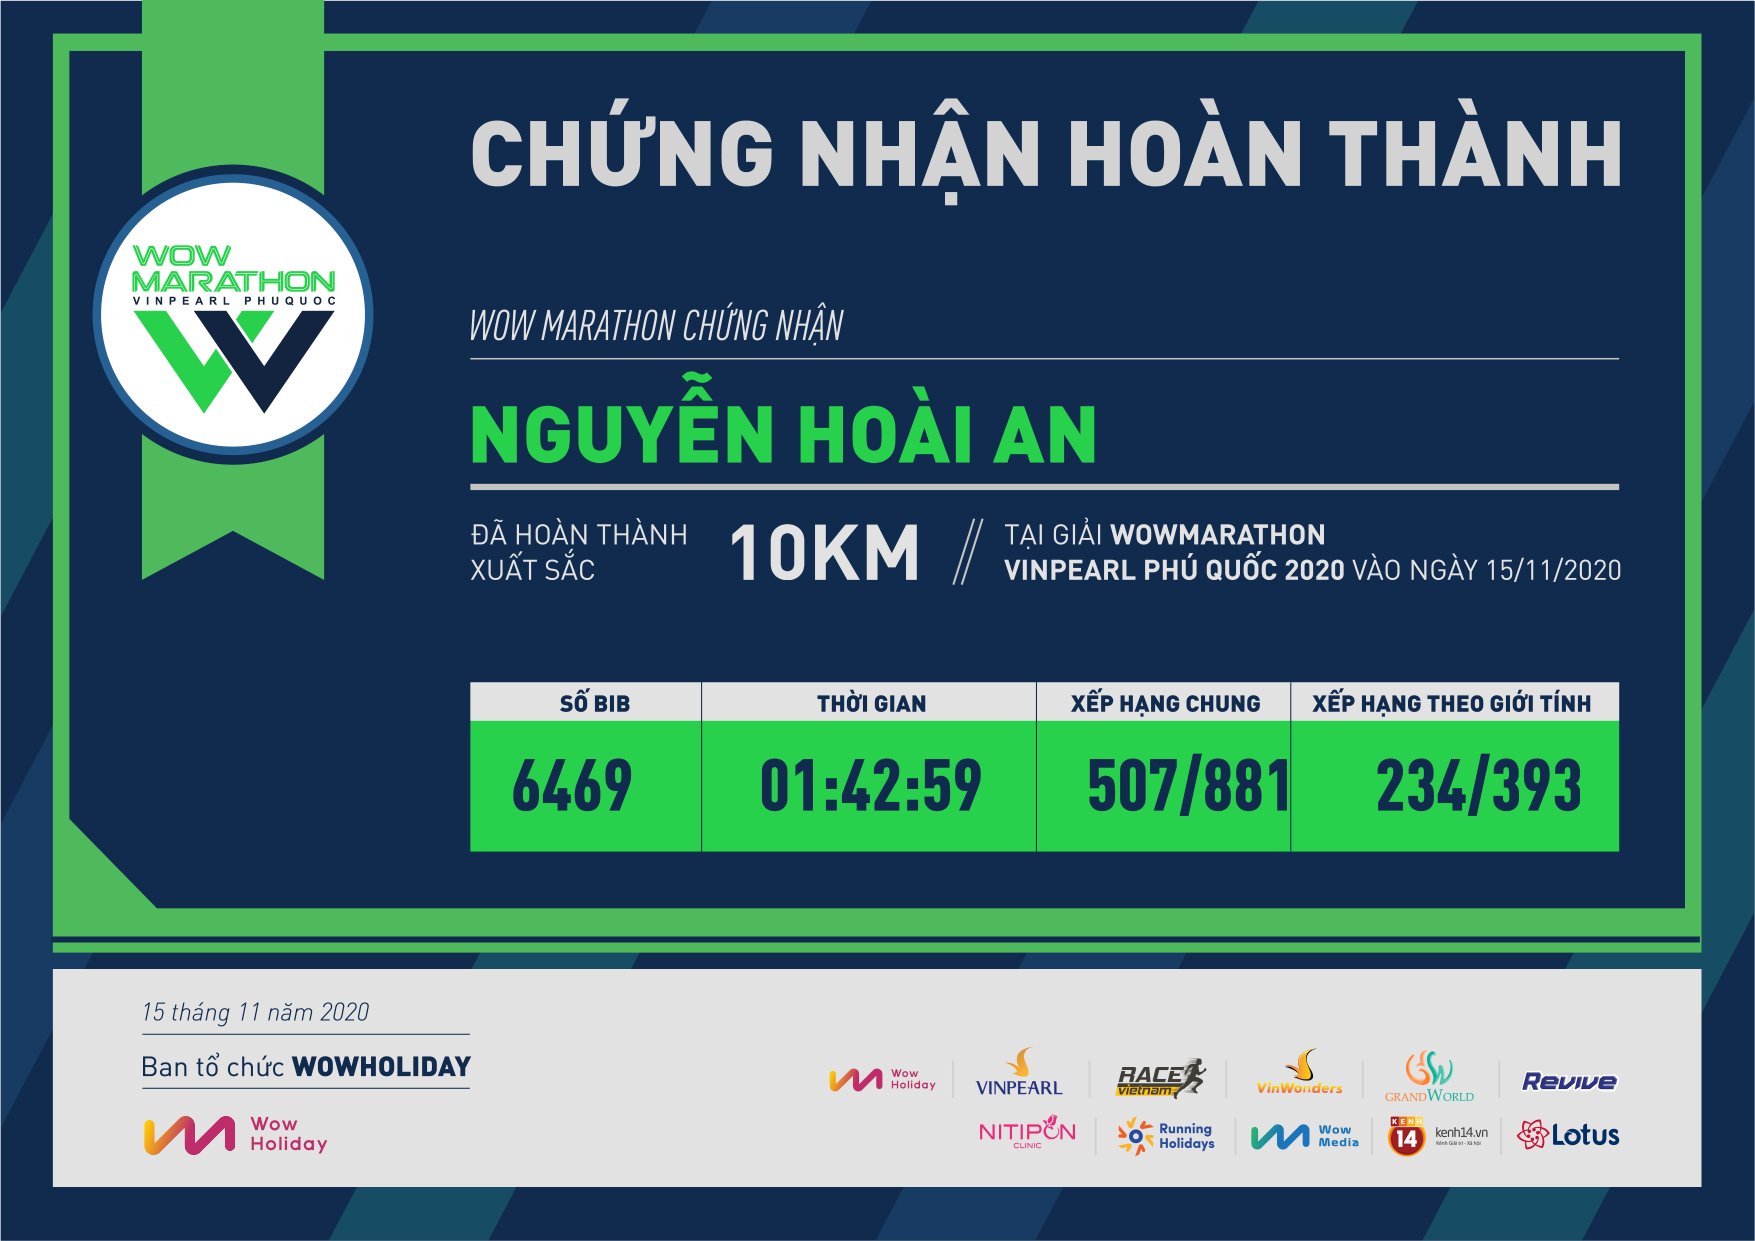 6469 - Nguyễn Hoài An